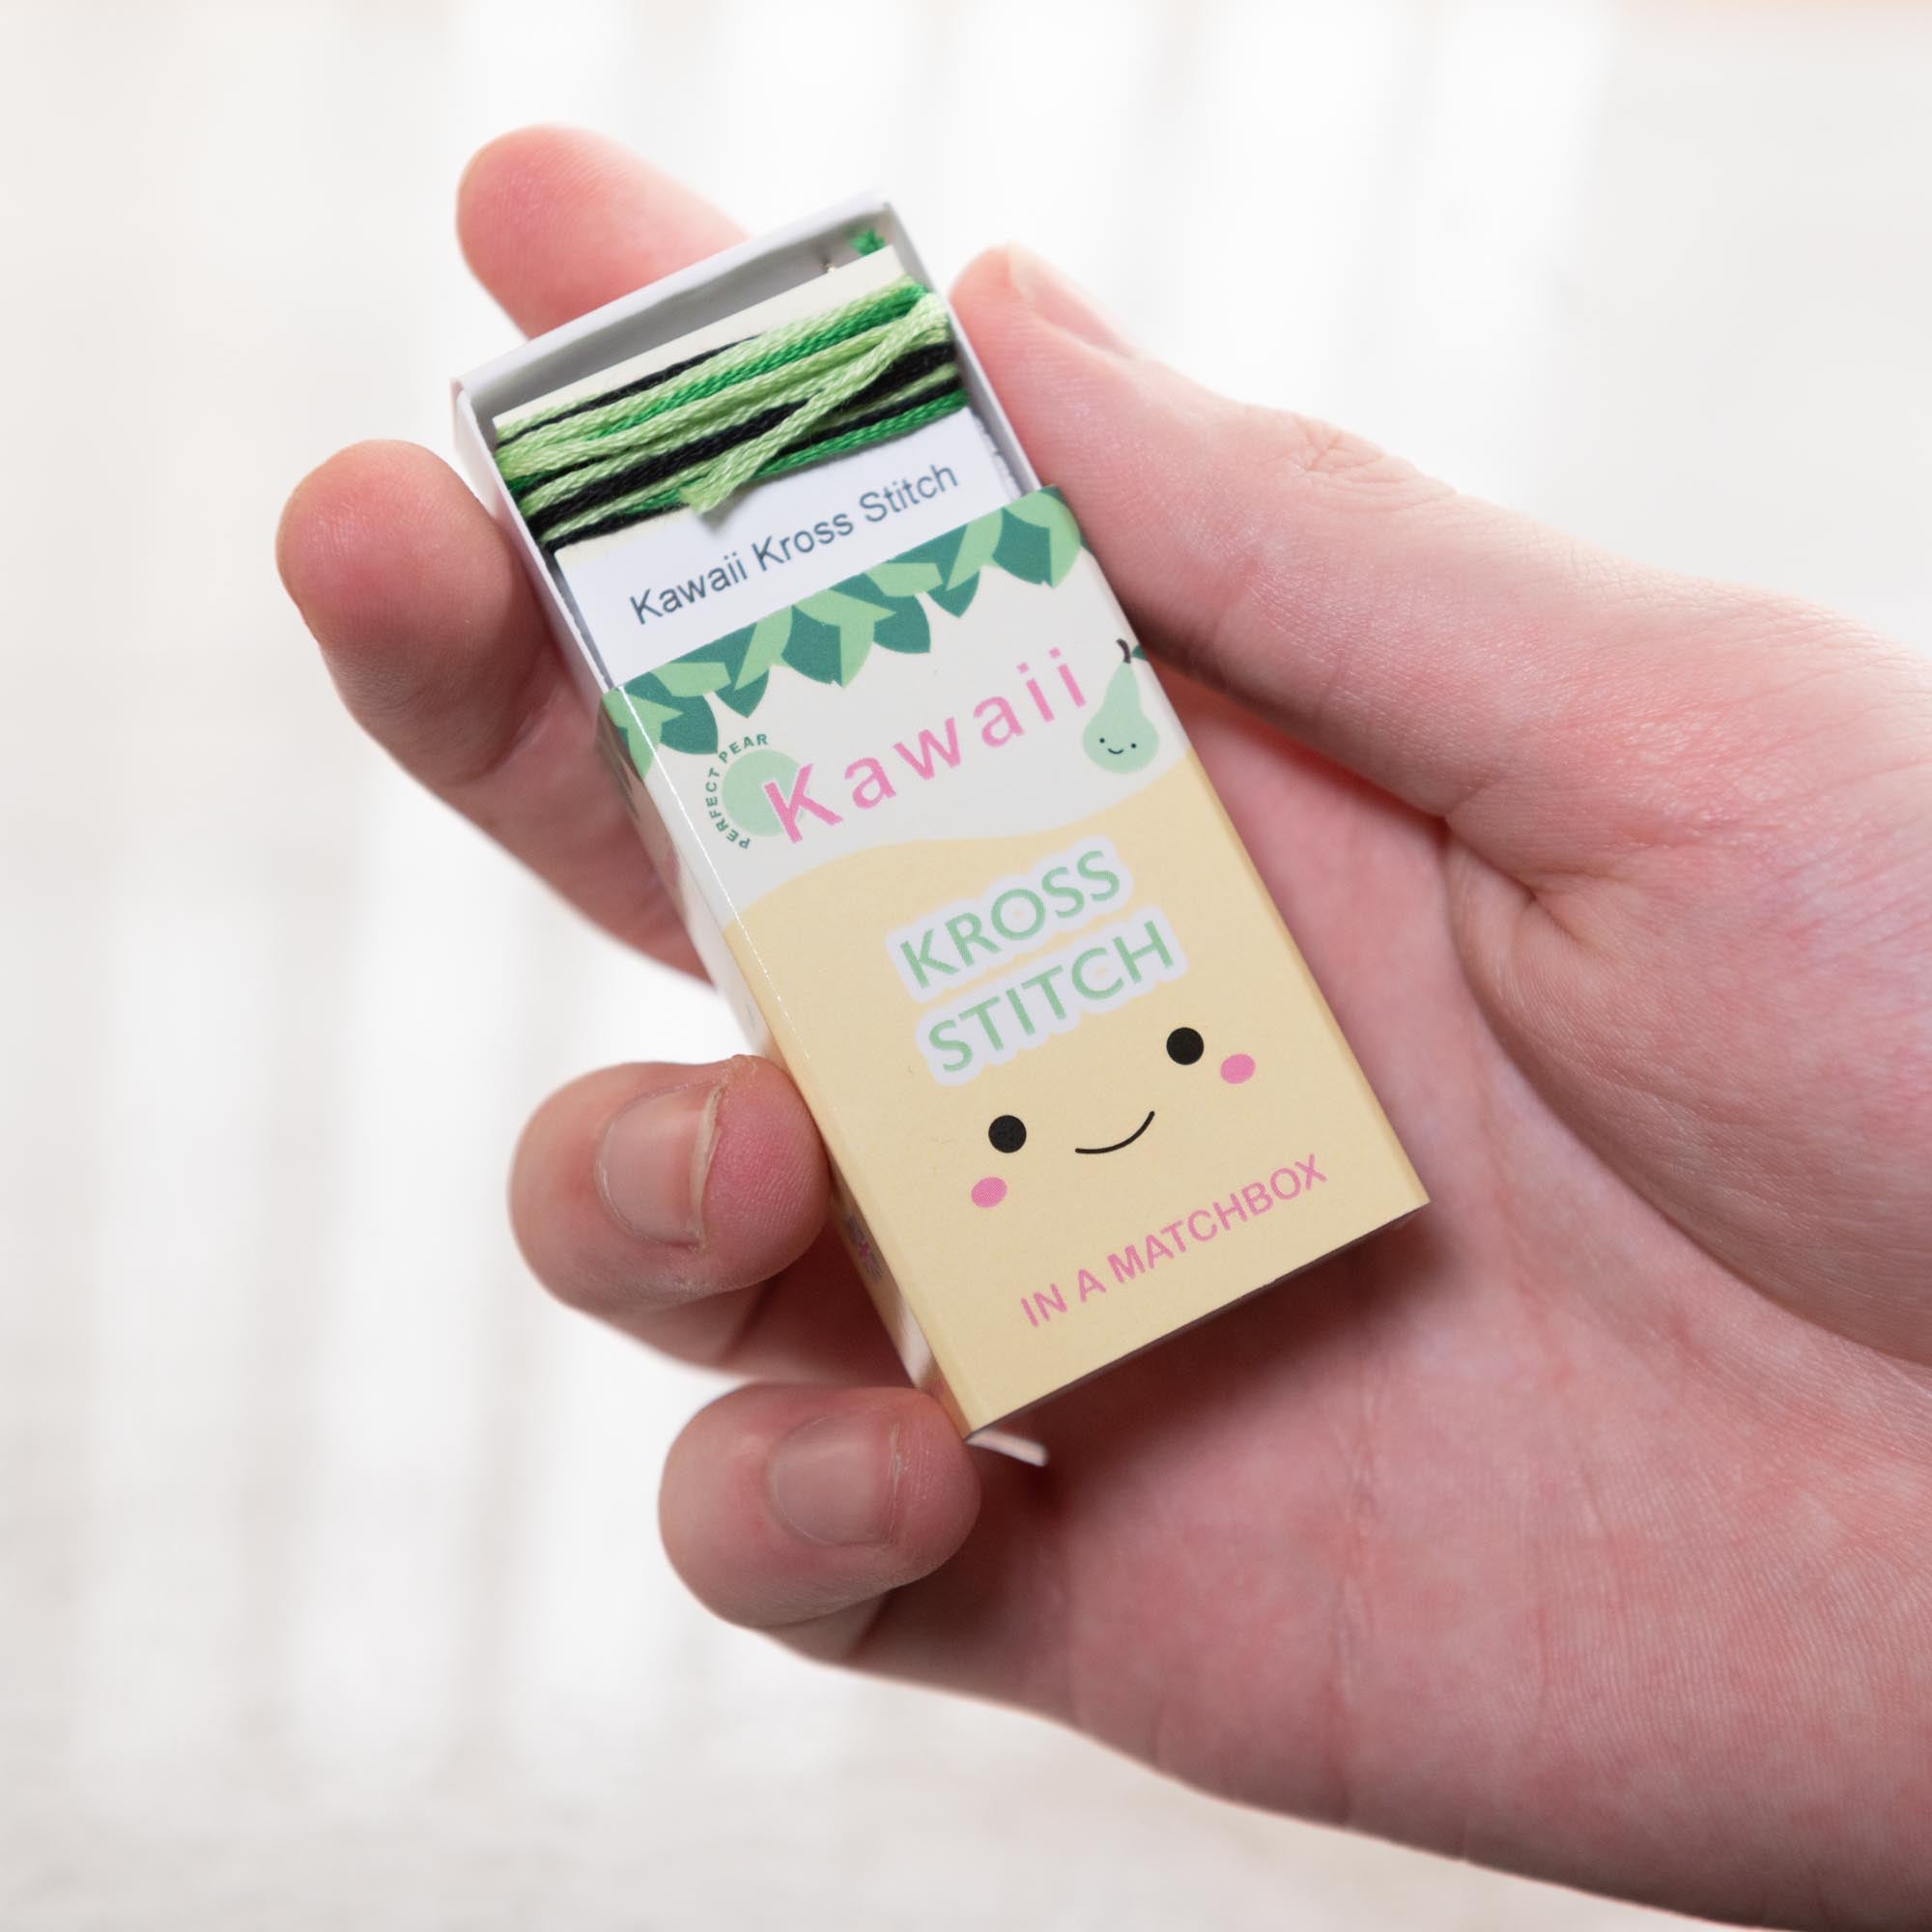 Mini Cross Stitch Kit With Kawaii Pear In A Matchbox